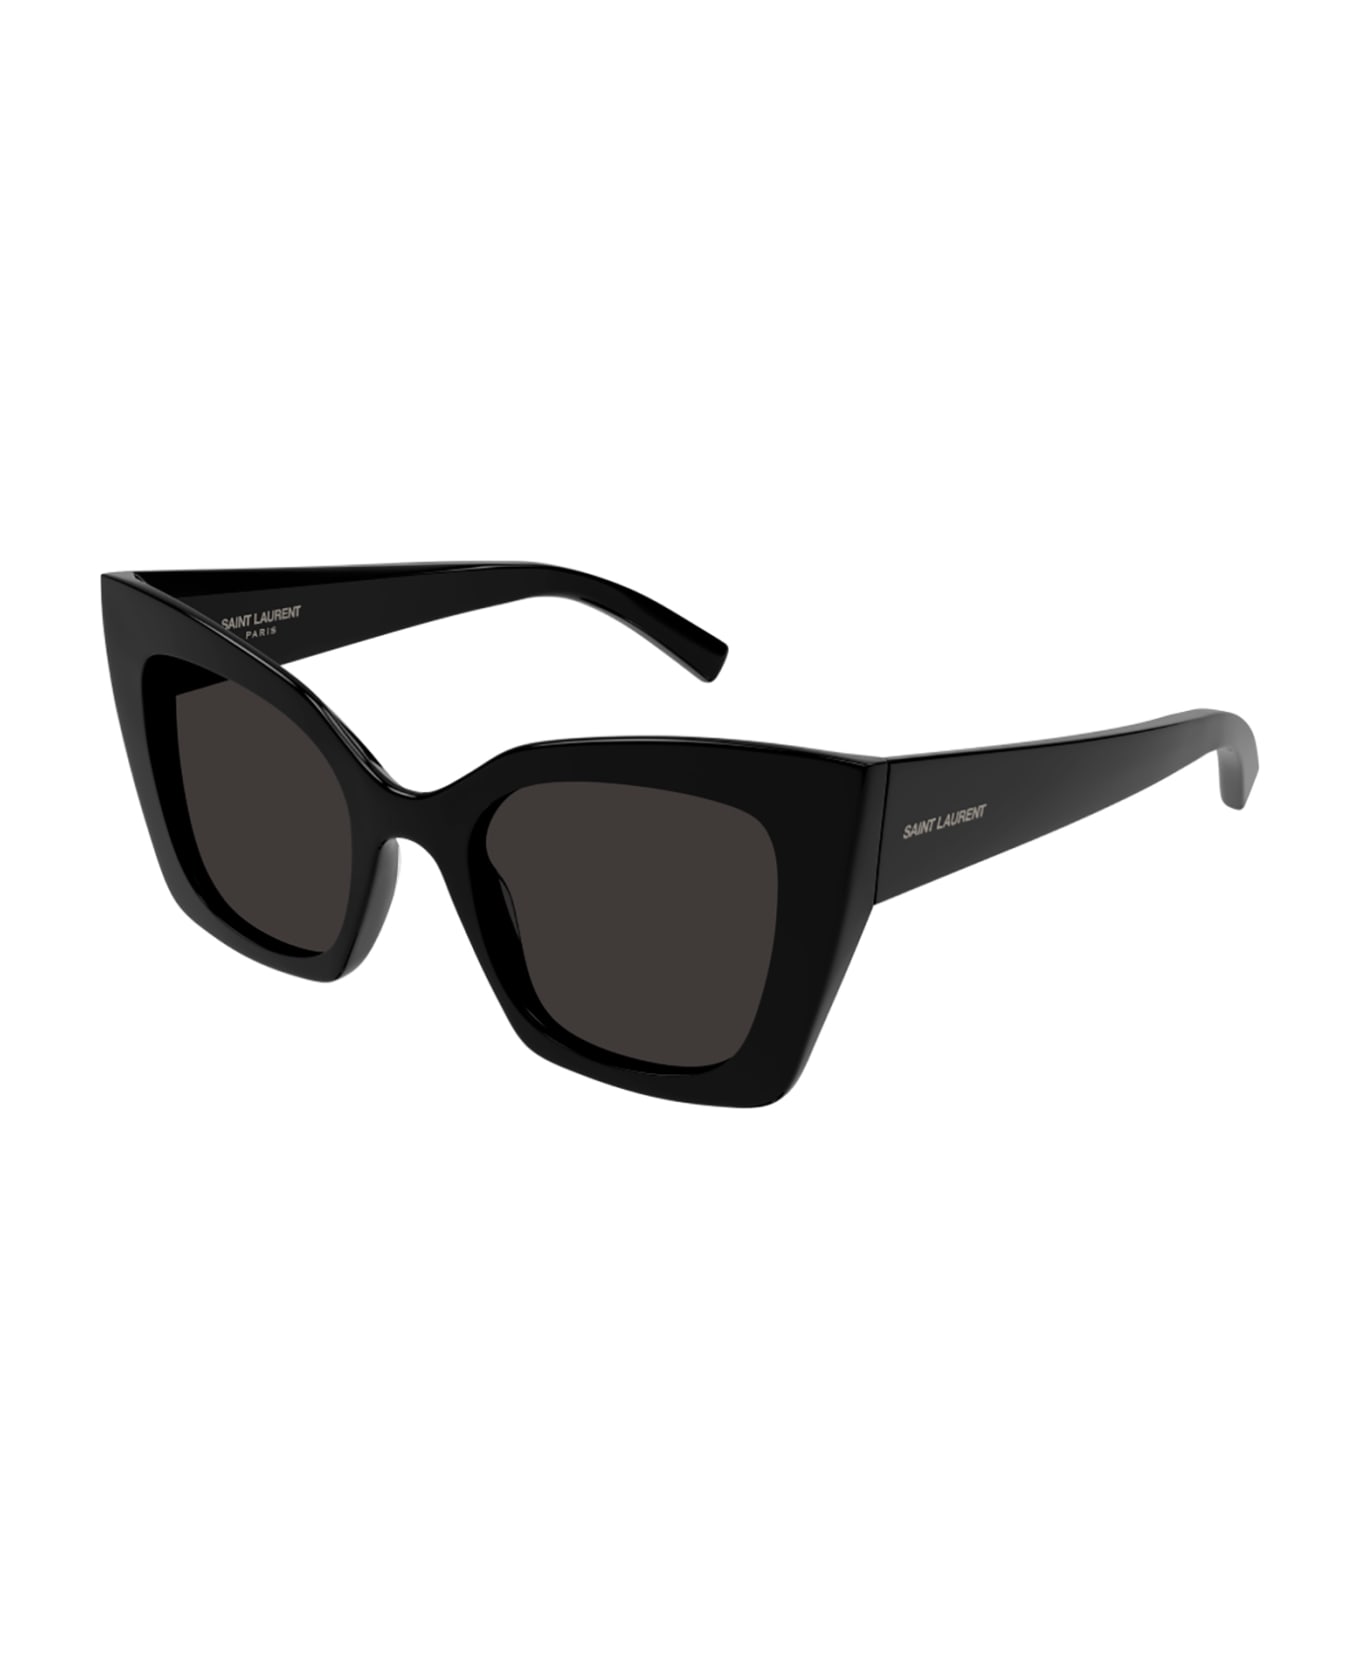 Saint Laurent Eyewear SL 552 Sunglasses - Black Black Black